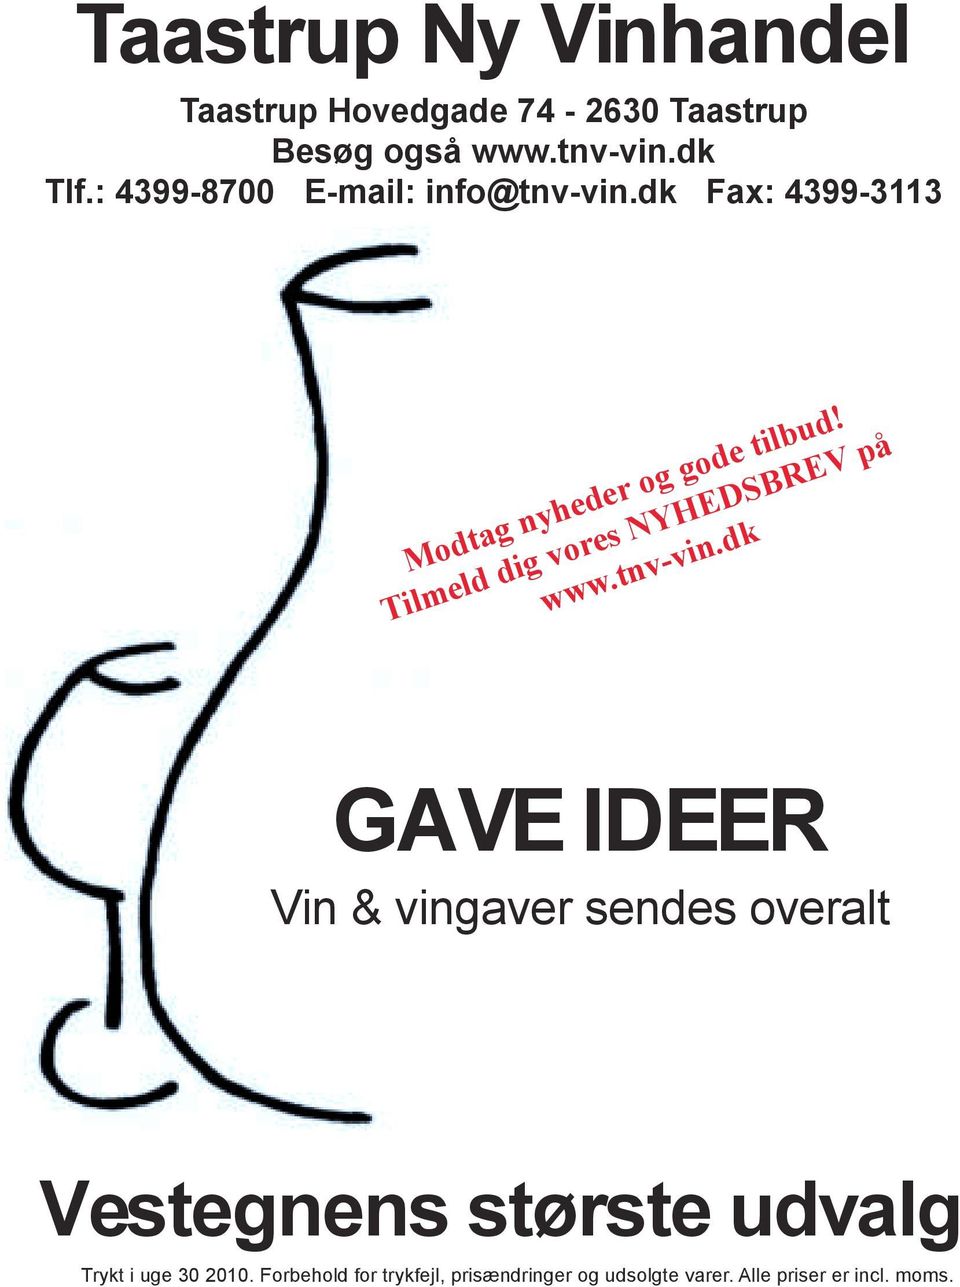 Tilmeld dig vores NYHEDSBREV på www.tnv-vin.dk Alle vine kan pakkes i 1, 2, 3, 4 & 6 stk.